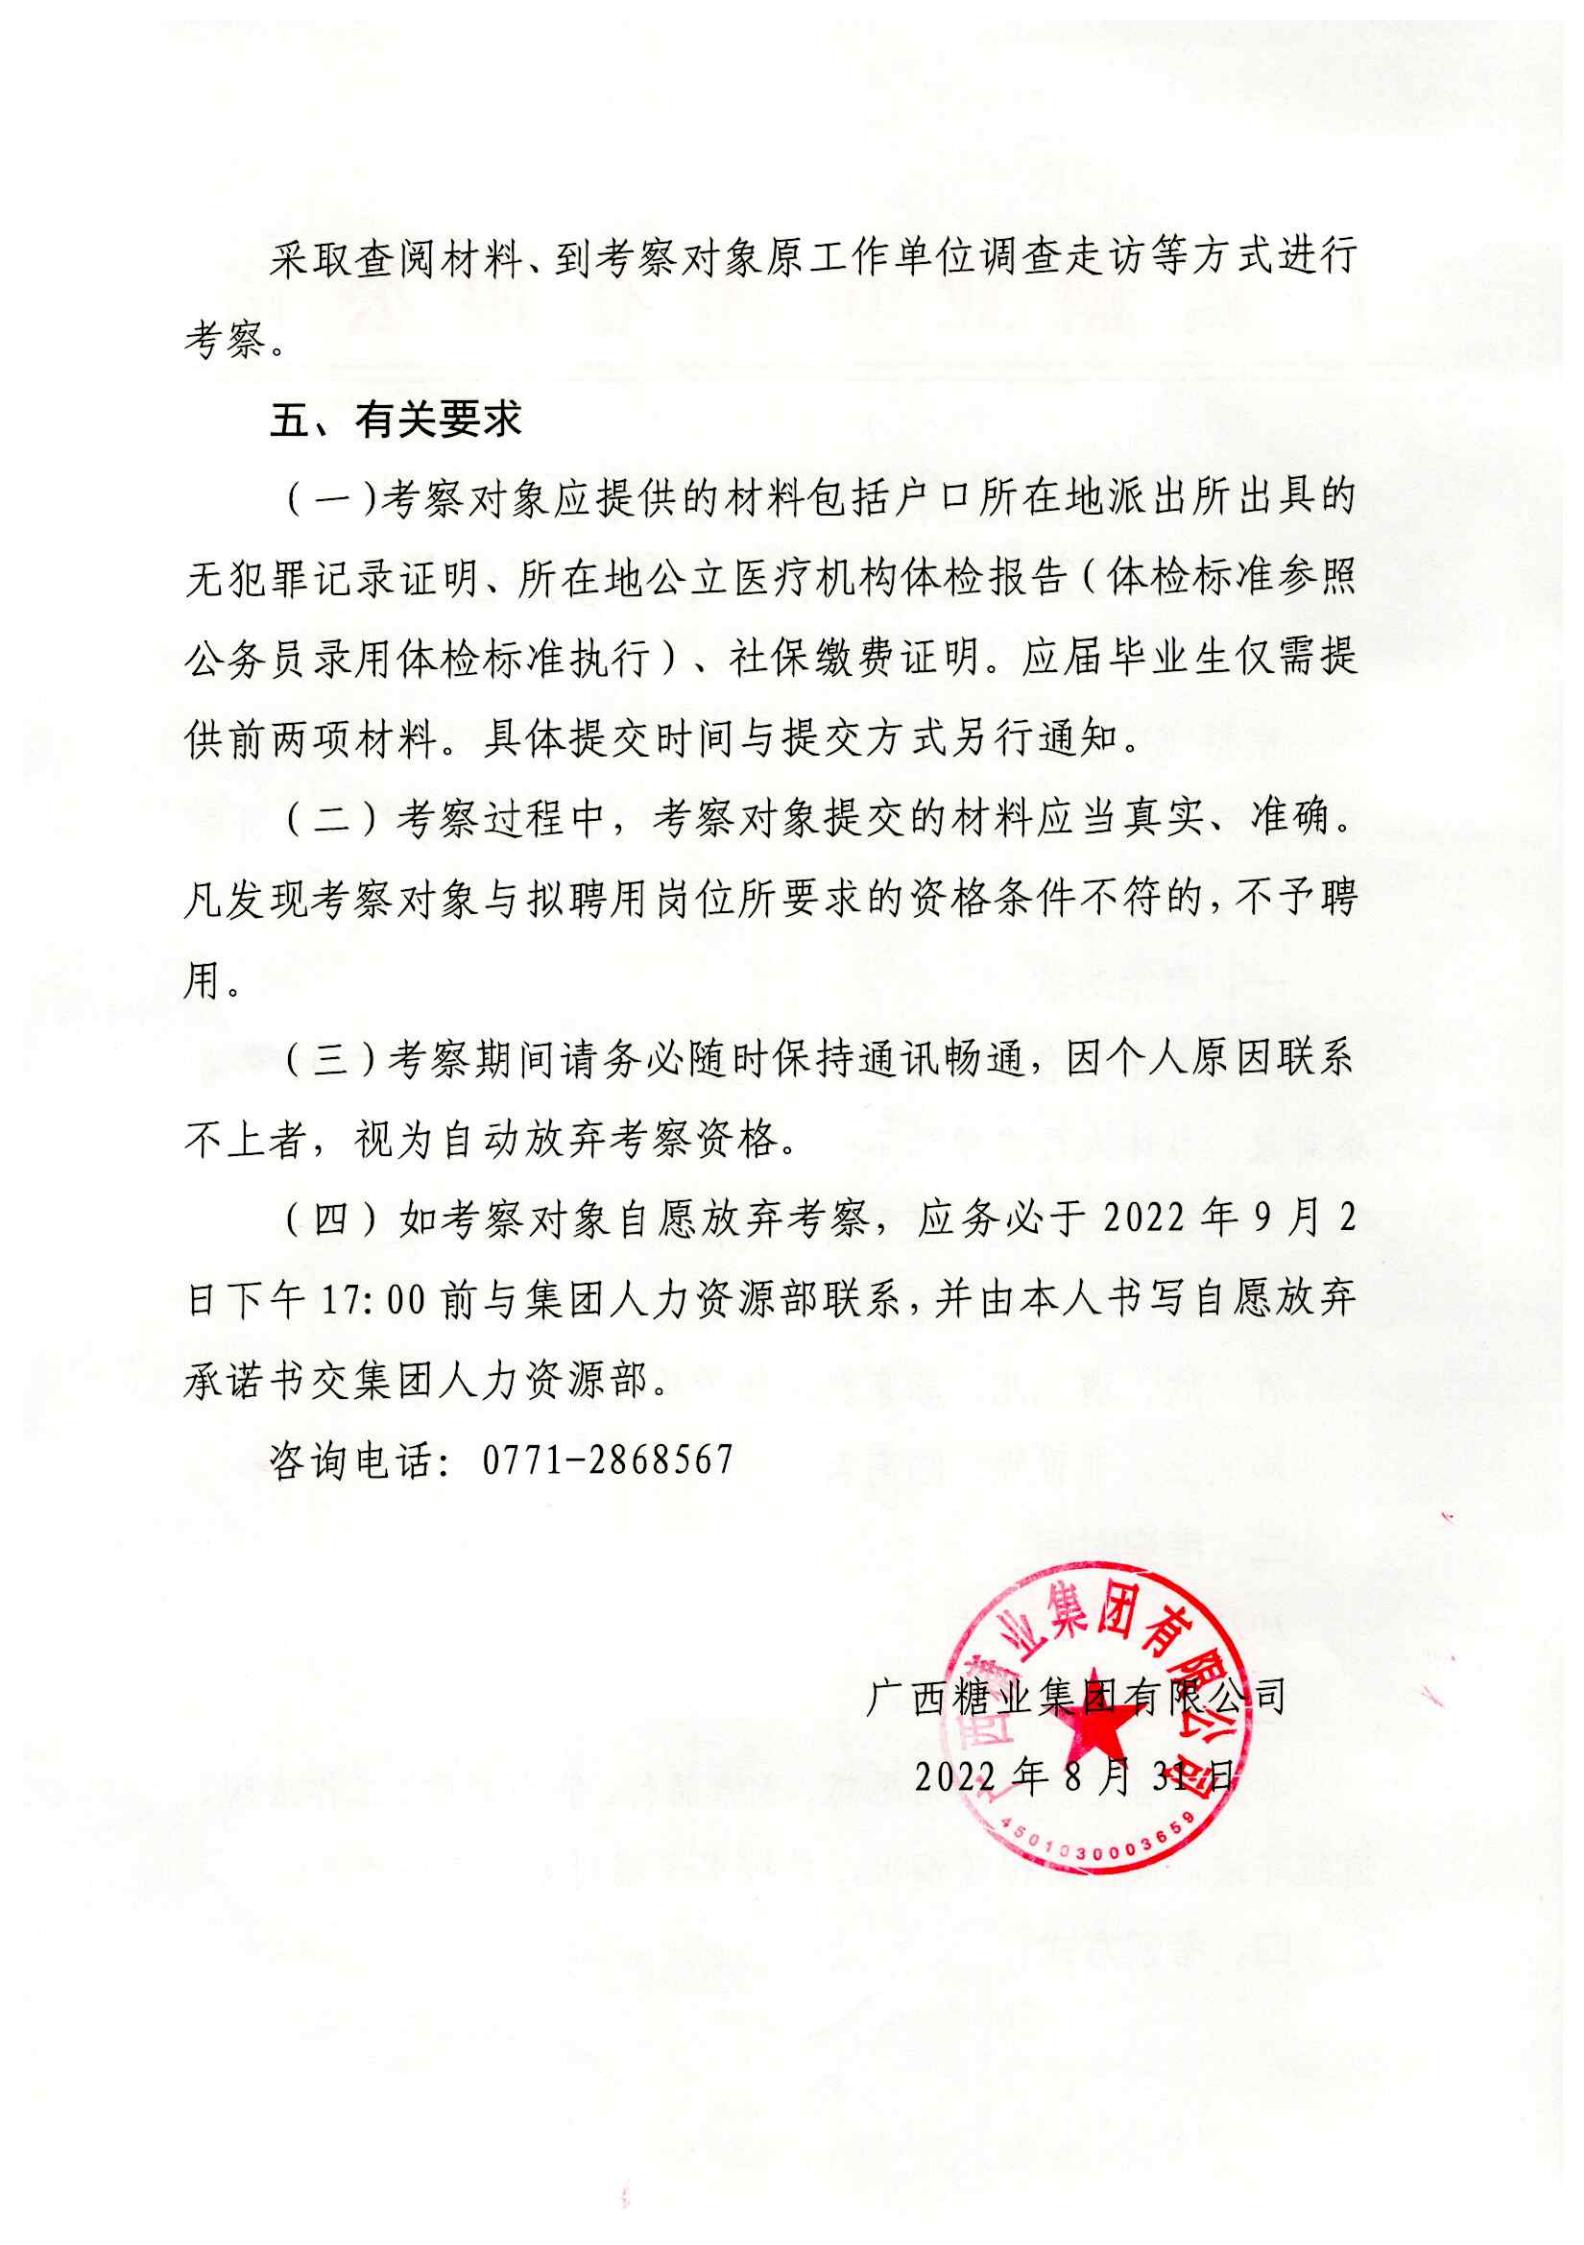 江南平台(中国)有限公司有限公司下属企业2022年夏季招聘人员考察公告_01.jpg